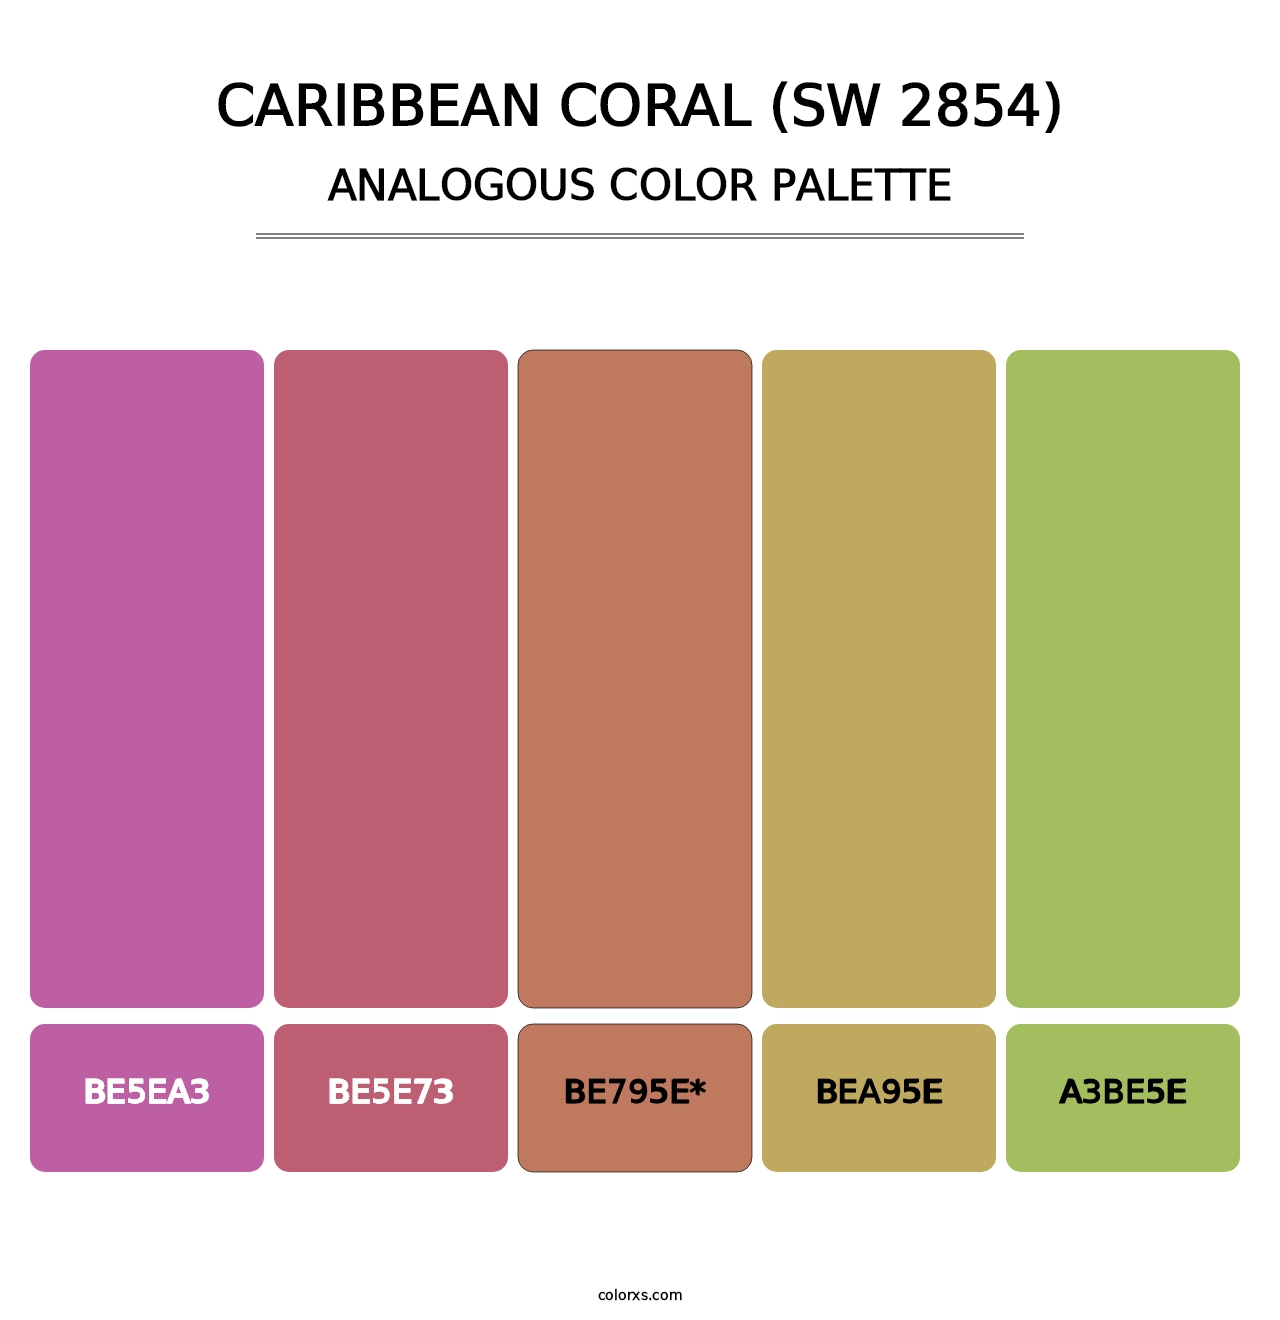 Caribbean Coral (SW 2854) - Analogous Color Palette